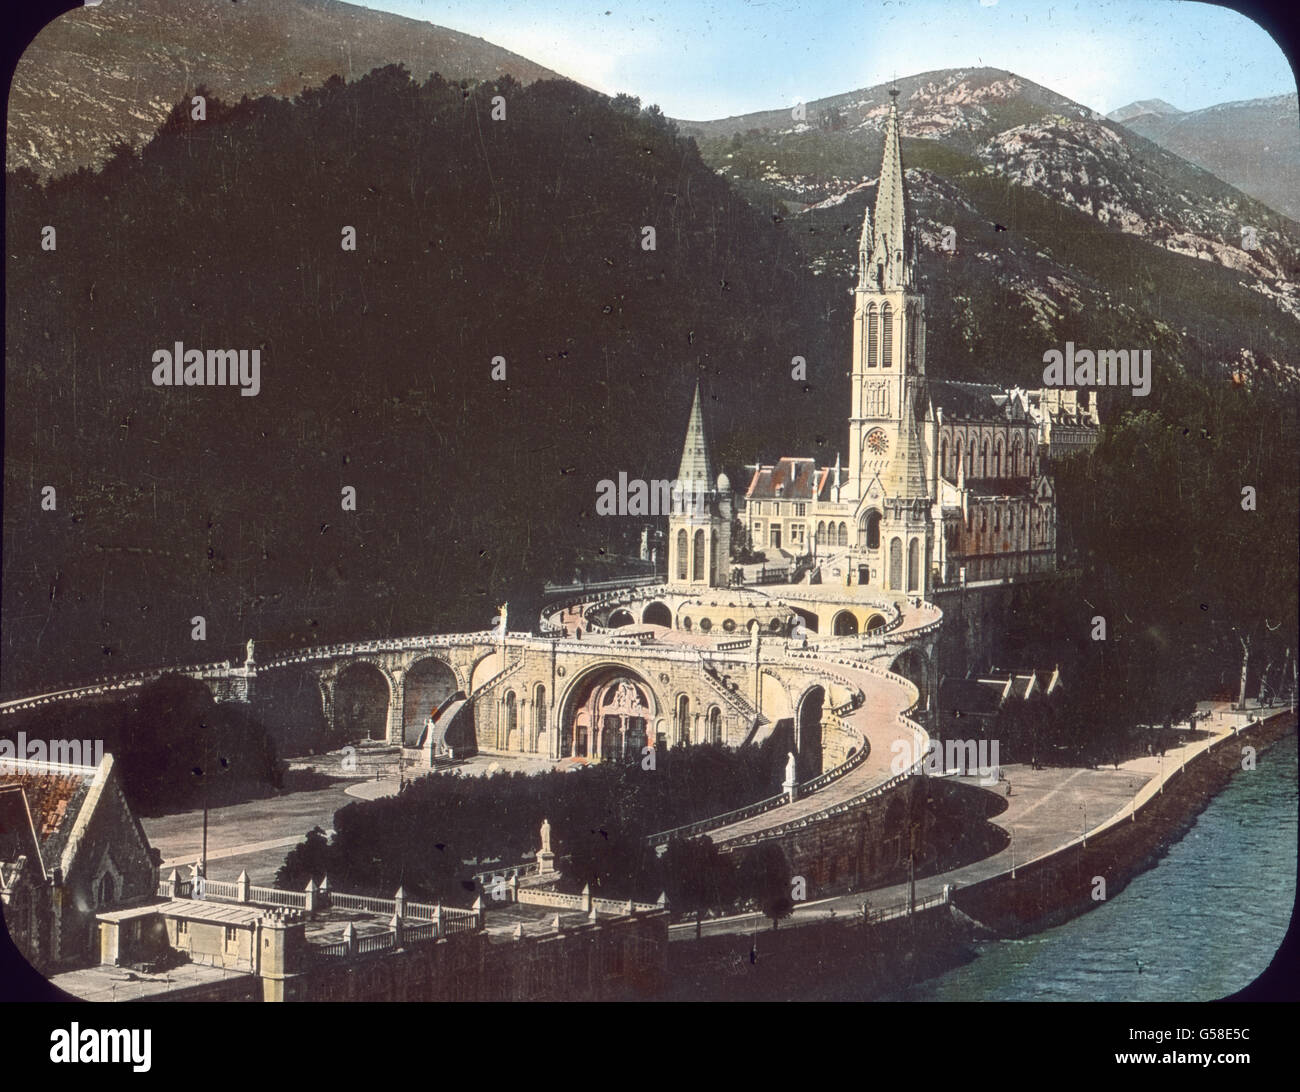 Die Grenze Spaniens und Frankreichs bezeichnet ein himmelhohes Gebirge, die Pyrenäen, das mit all seinen Naturschönheiten noch viel zu wenig bekannt ist und es noch weniger wäre, wenn in ihm nicht der  Wallfahrtsort Lourdes läge, zu dem alljährlich mehr als 100.000 Pilger aus allen Ländern der Erde strömen. Unser Bild zeigt inmitten der gewaltigen Berglandschaft die herrliche Wallfahrtskirche am Ufer der rauschenden Gave de Pau. Während wir an die Pyrenäen,  Lourdes und seine Gnadenwunder  denken, braust unser Schiff weiter an Spaniens und Portugals Küsten vorüber und erreicht nach mehrtägiger Stock Photo